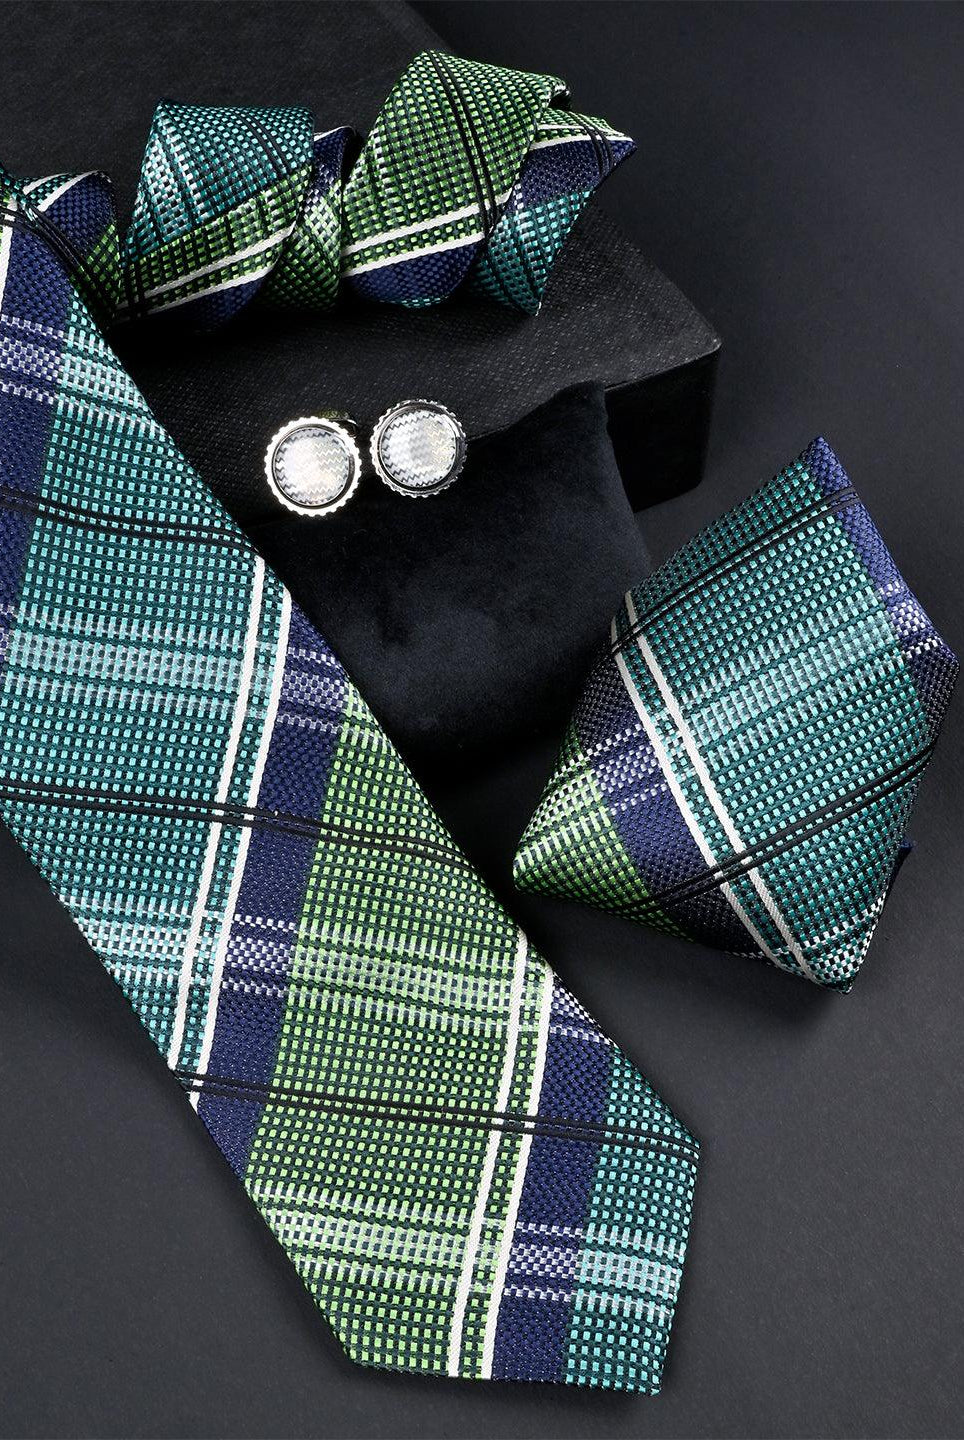 Green Checkered Micro Silk Necktie With Pocket Square & Cufflinks - Tistabene